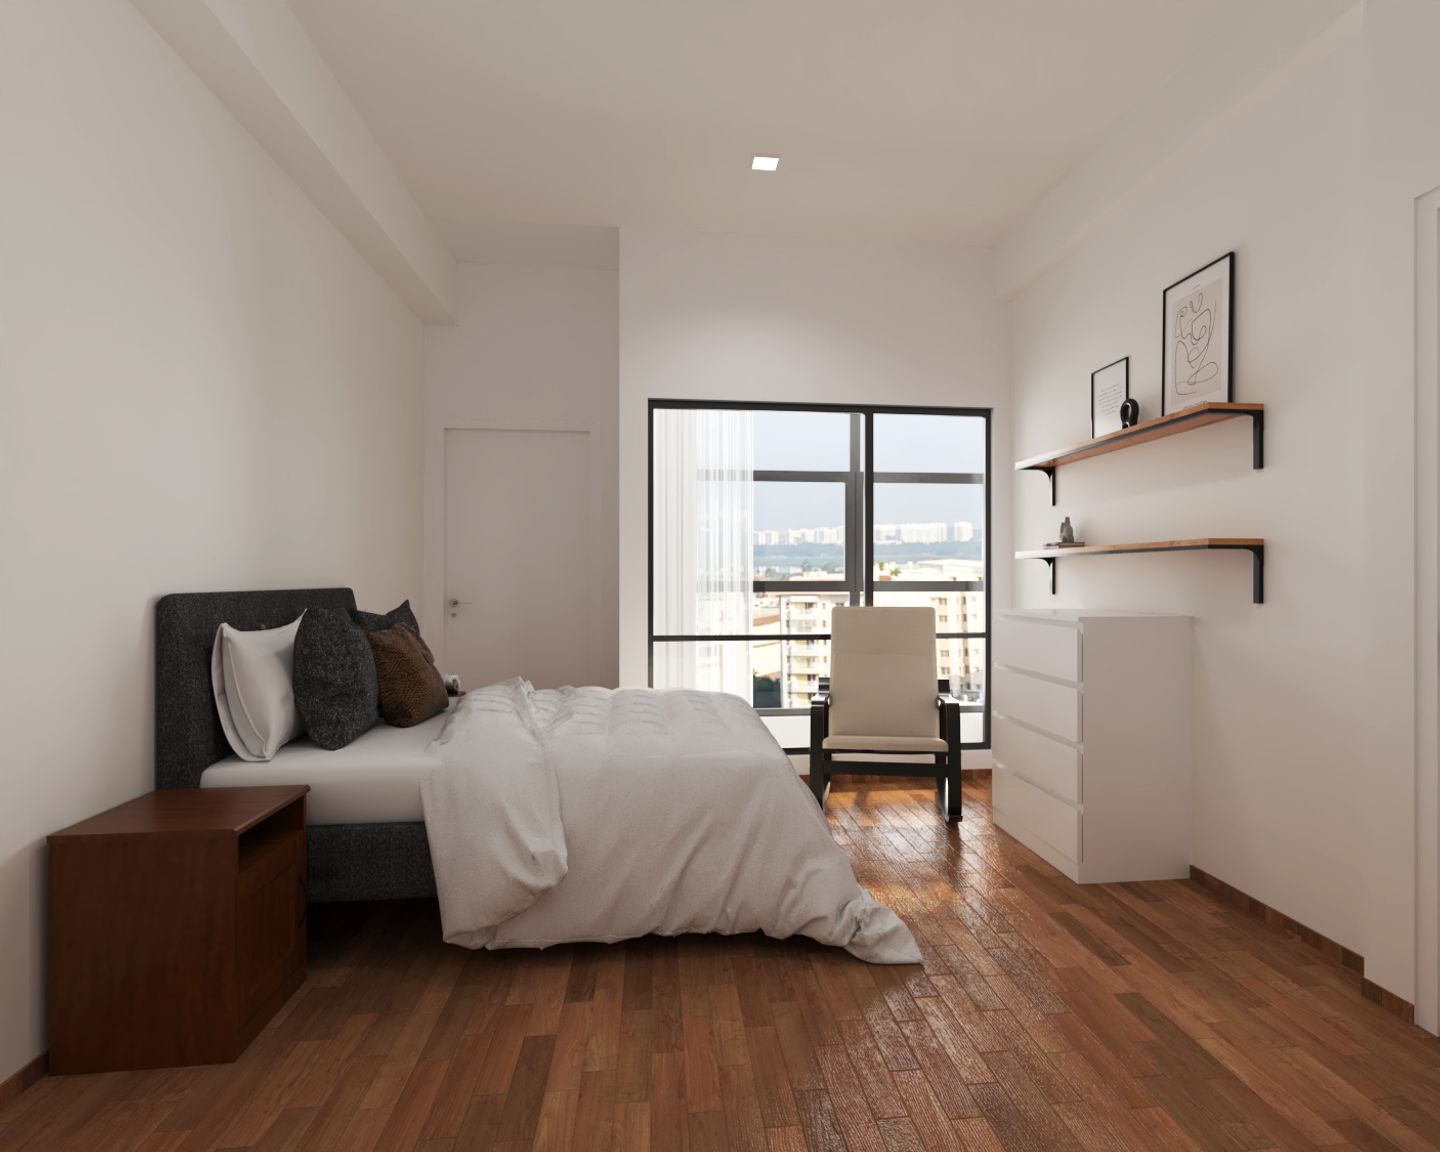 Master bedroom With Dark Wooden Flooring - Livspace